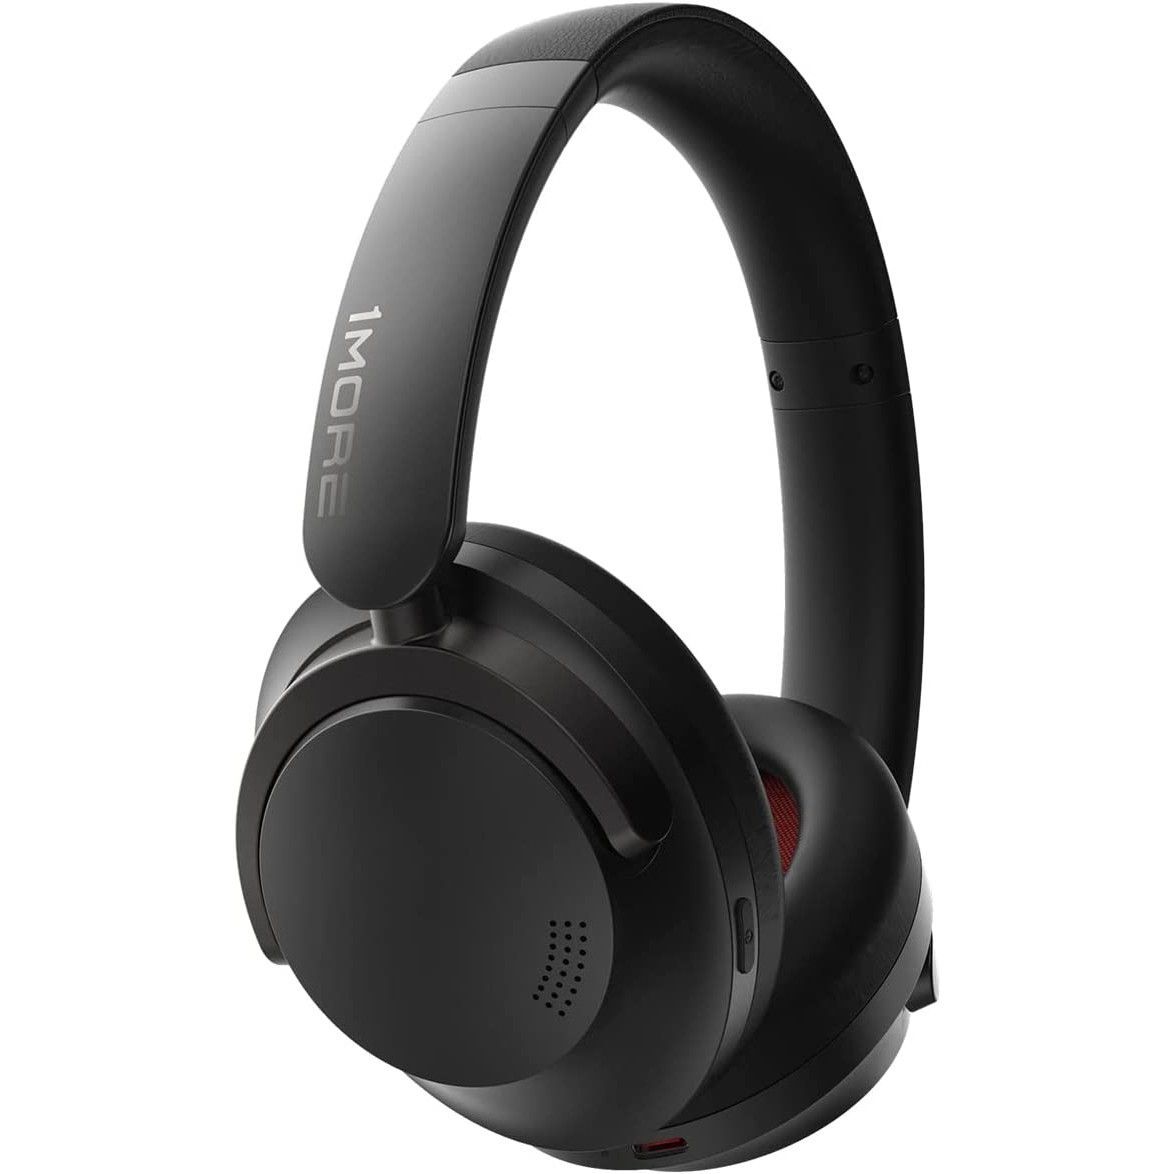 1MORE Sonoflow wireless over-ear headphones